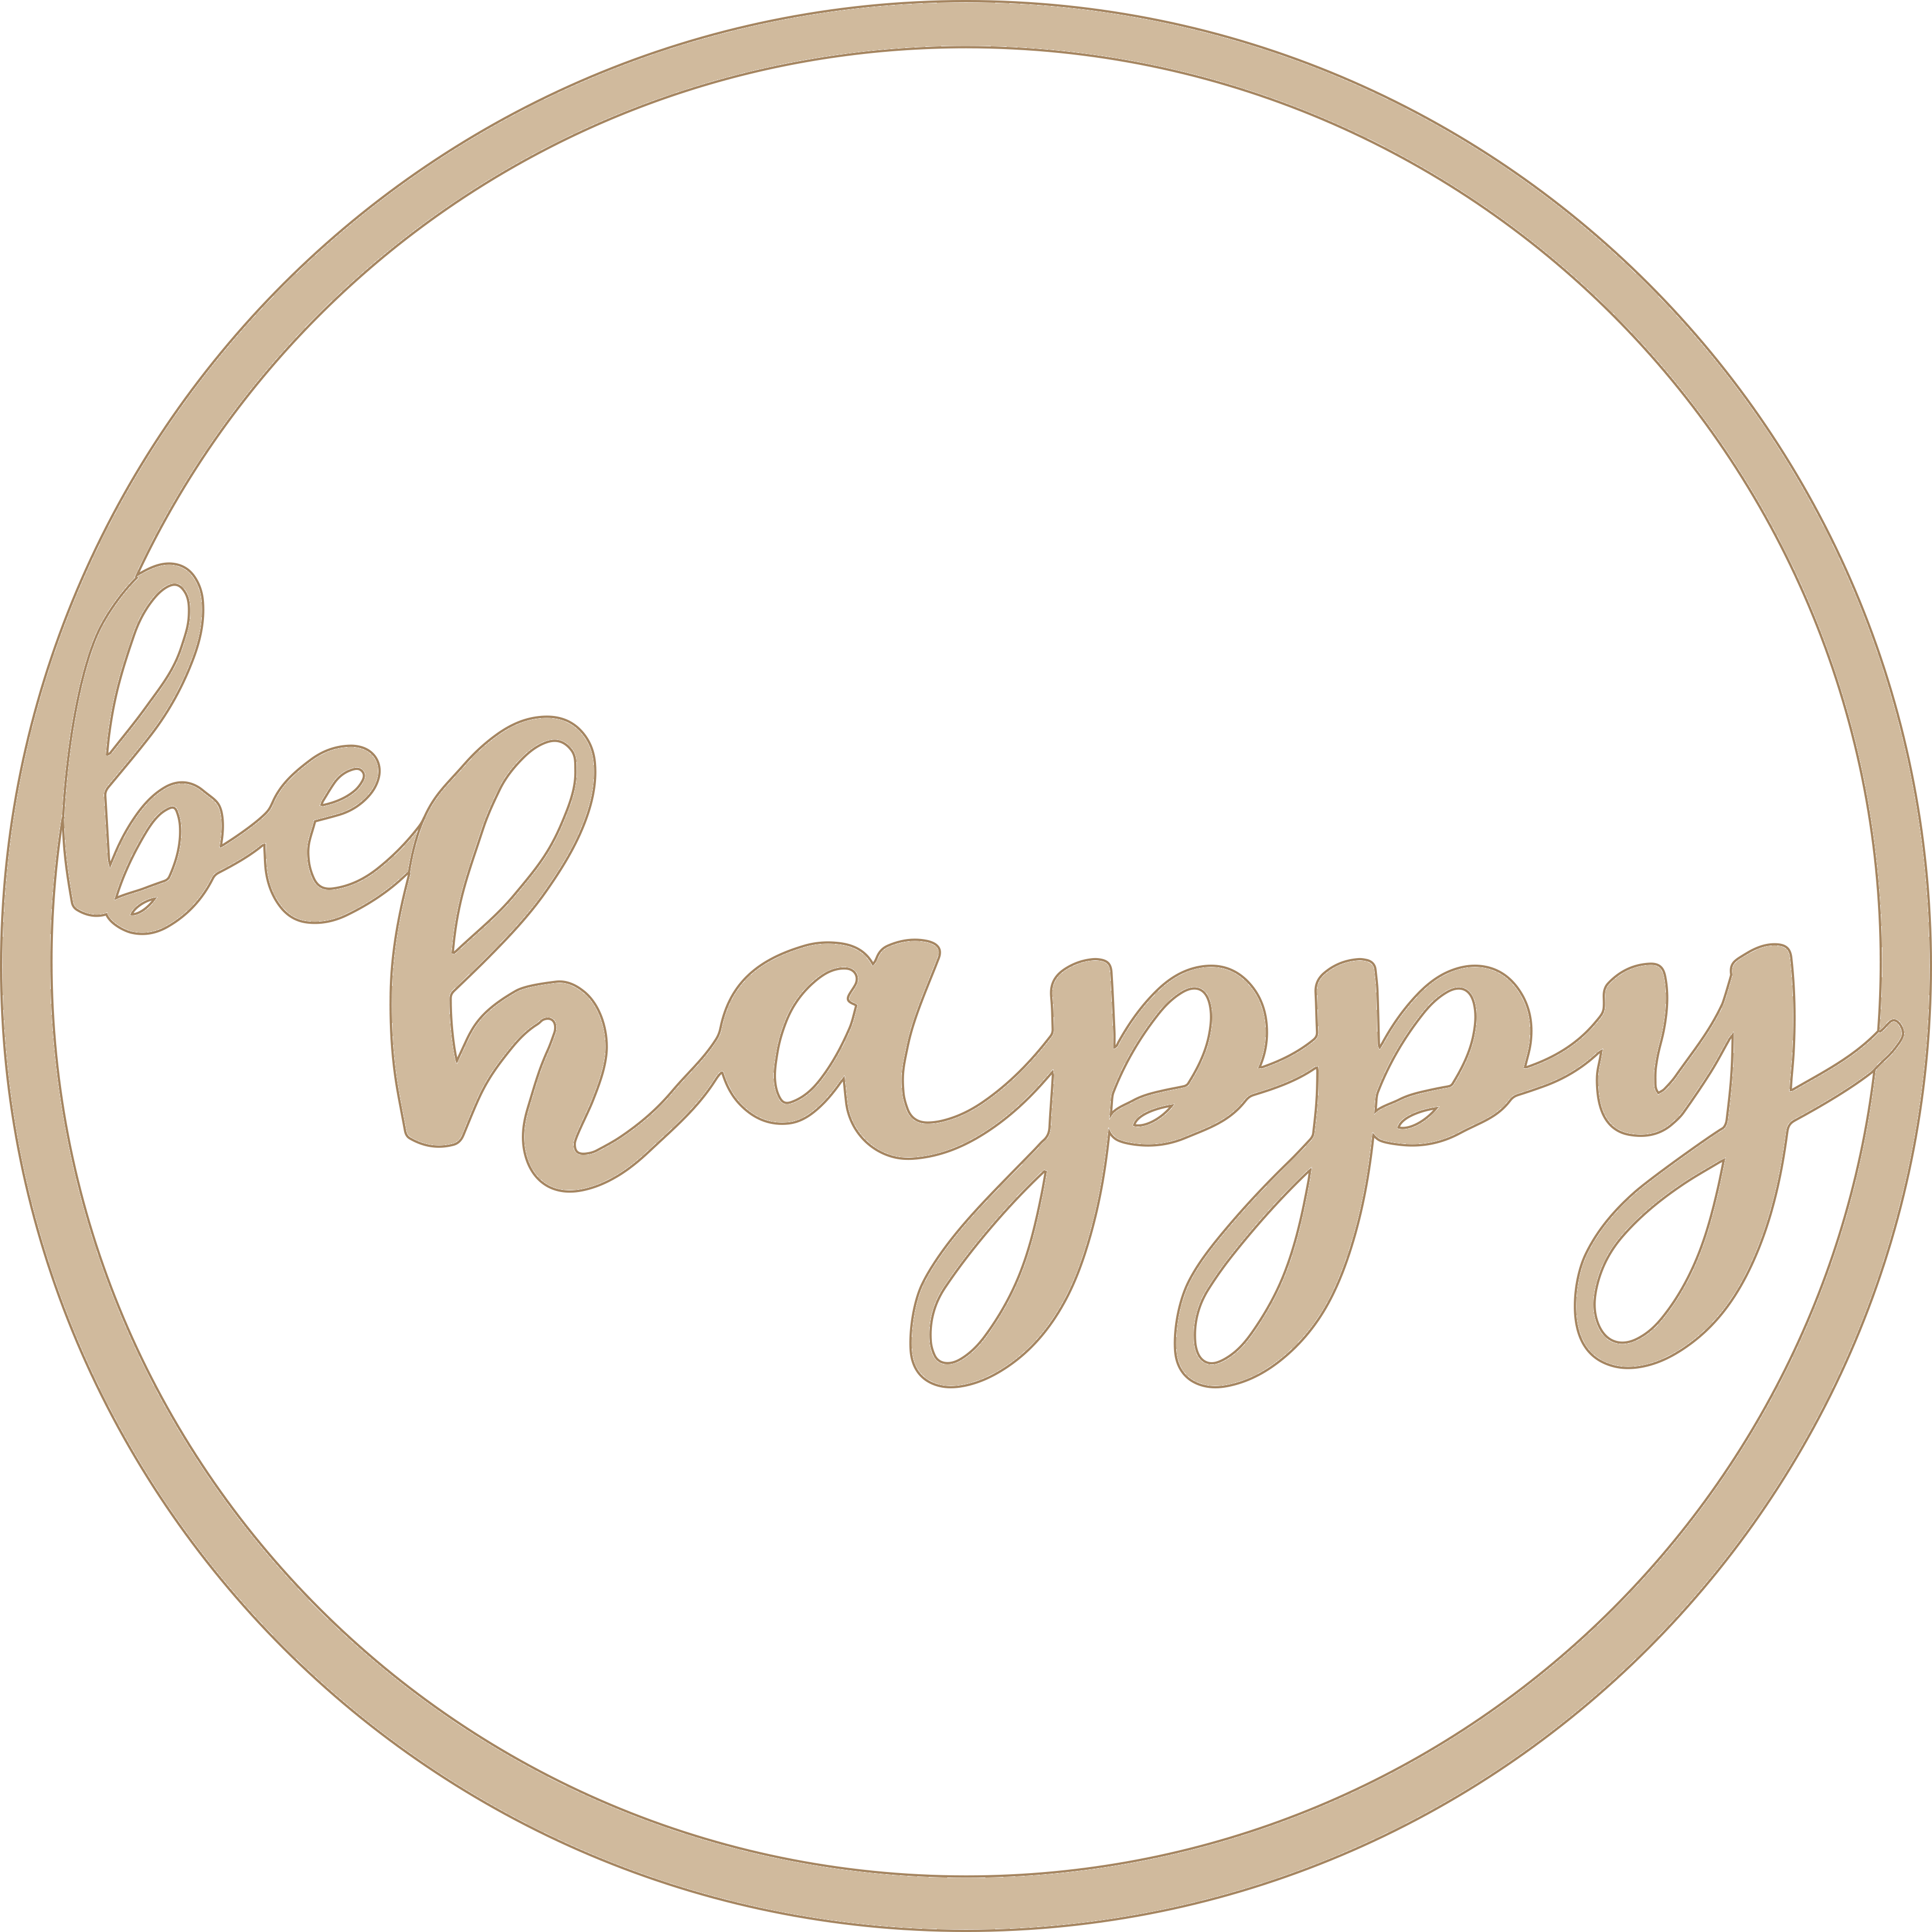 Holzgrusskarten - Holzkranz mit Schriftzug "be happy" aus Pappelholz, Holzring, Tür, Deko, Geschenk